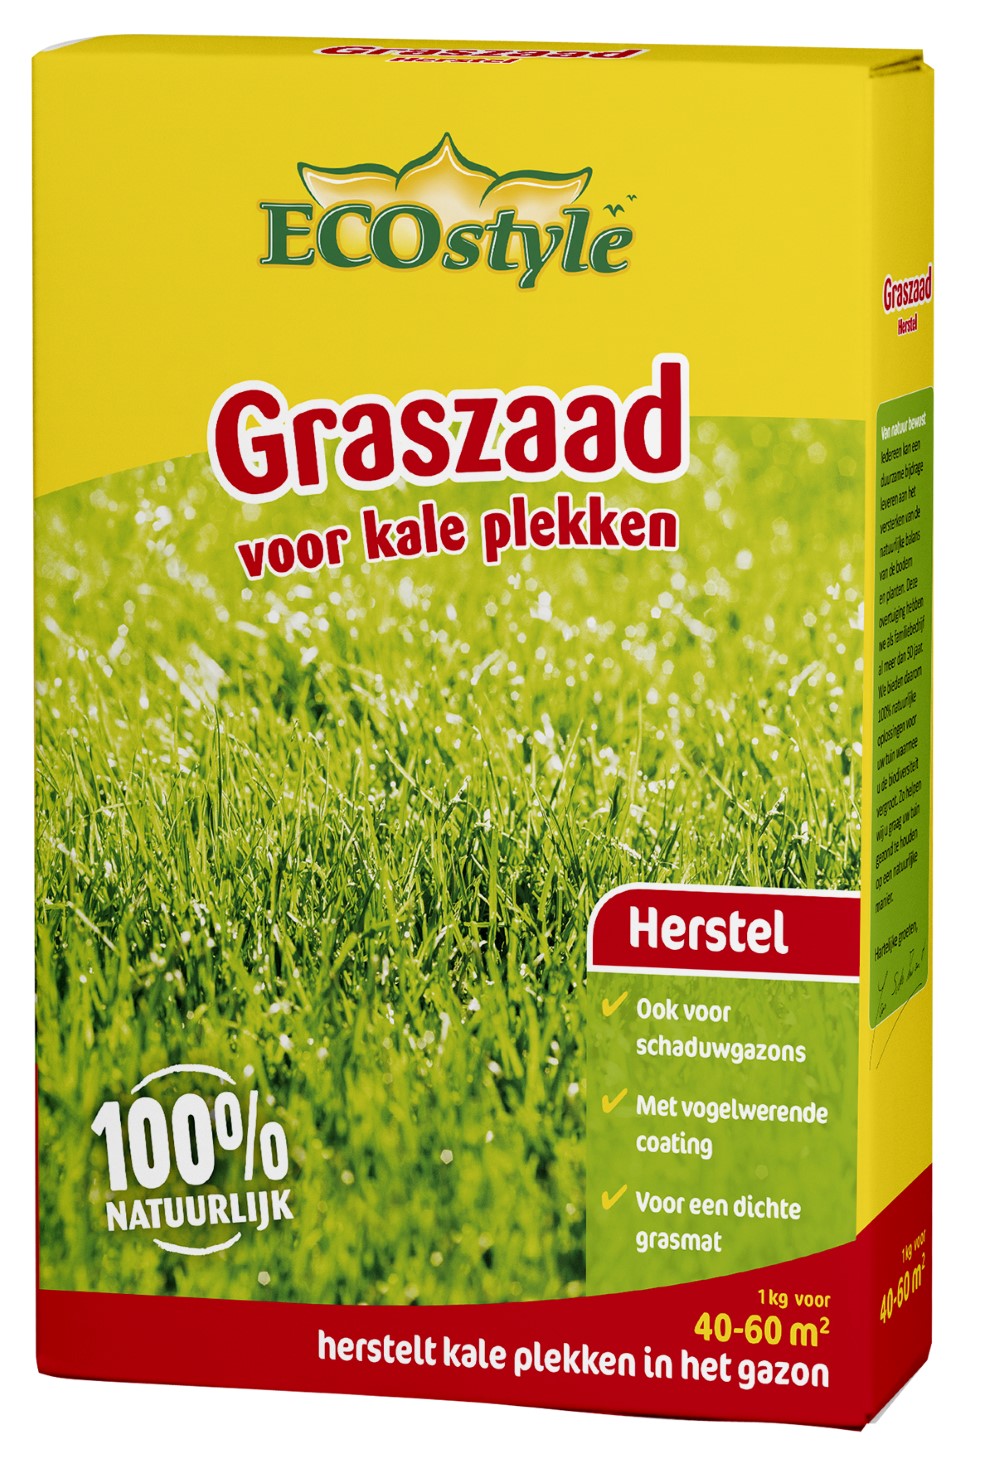 Afbeelding Ecostyle Graszaad-Extra 60 m2 - Graszaden - 1 kg door Haxo.nl